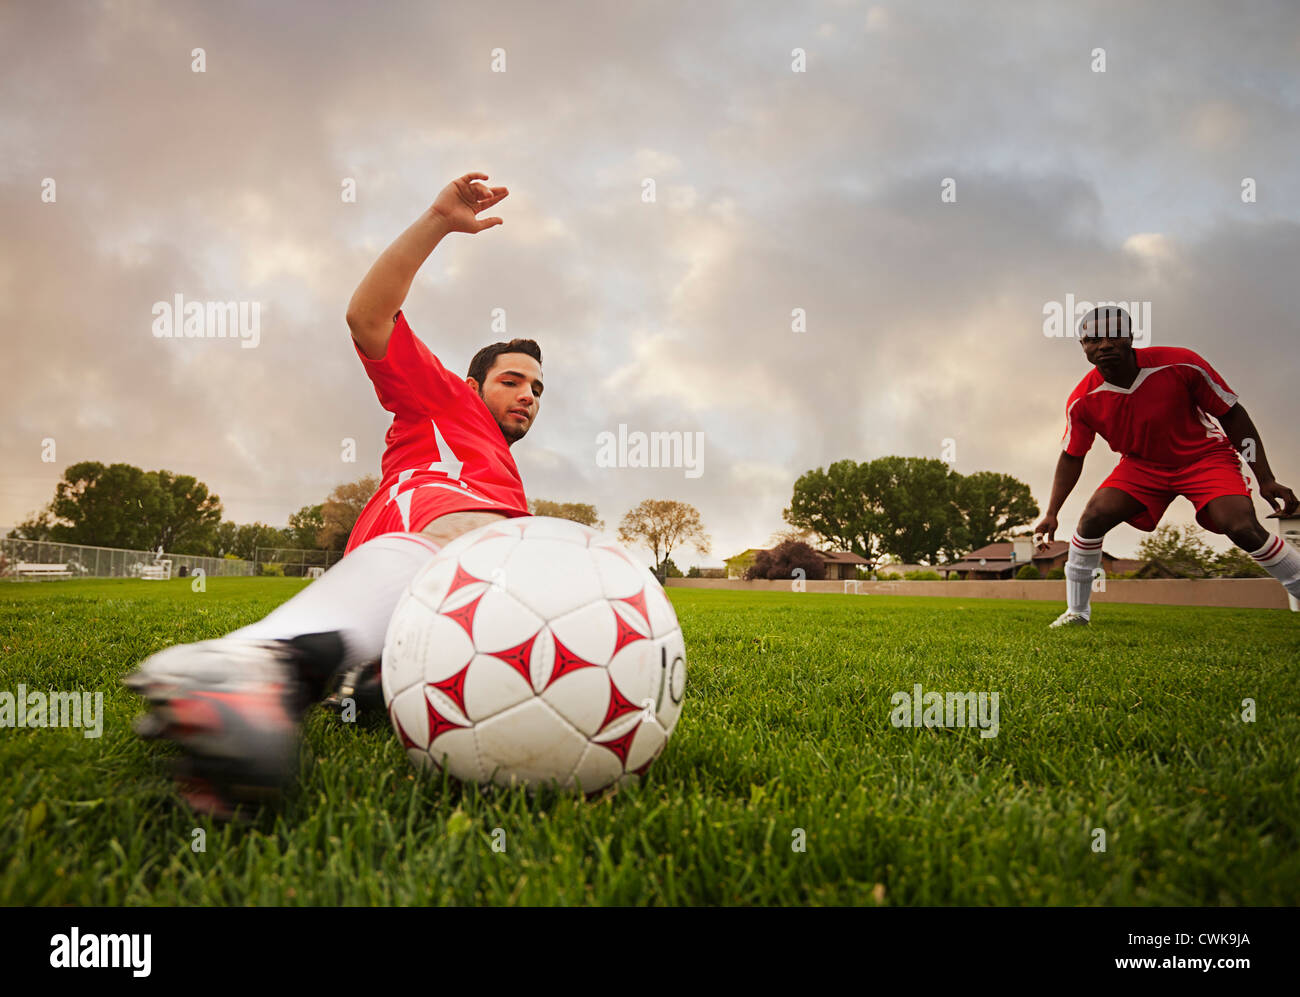 Jugador de fútbol Hispano pateando la pelota Foto de stock